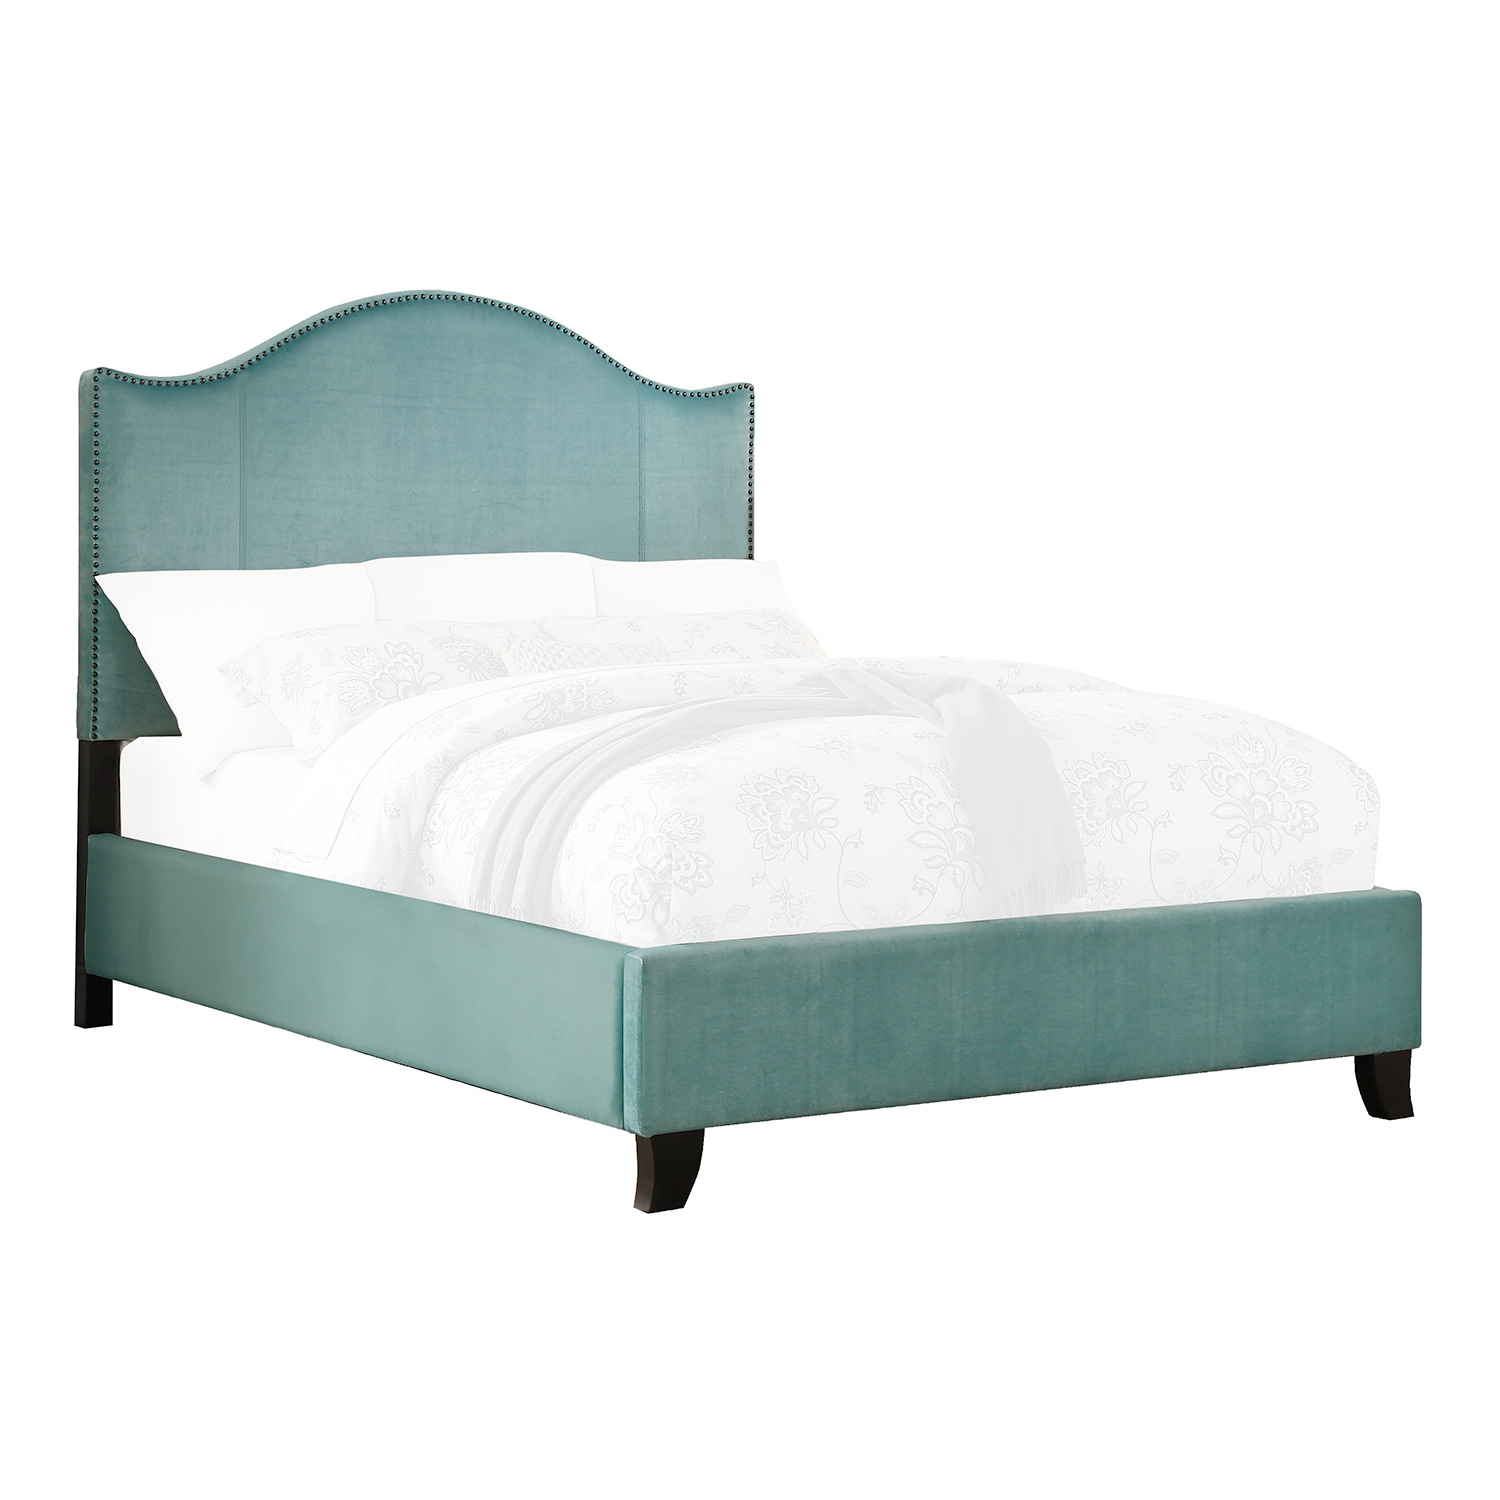 Homelegance Carlow Upholstered Bed - Teal